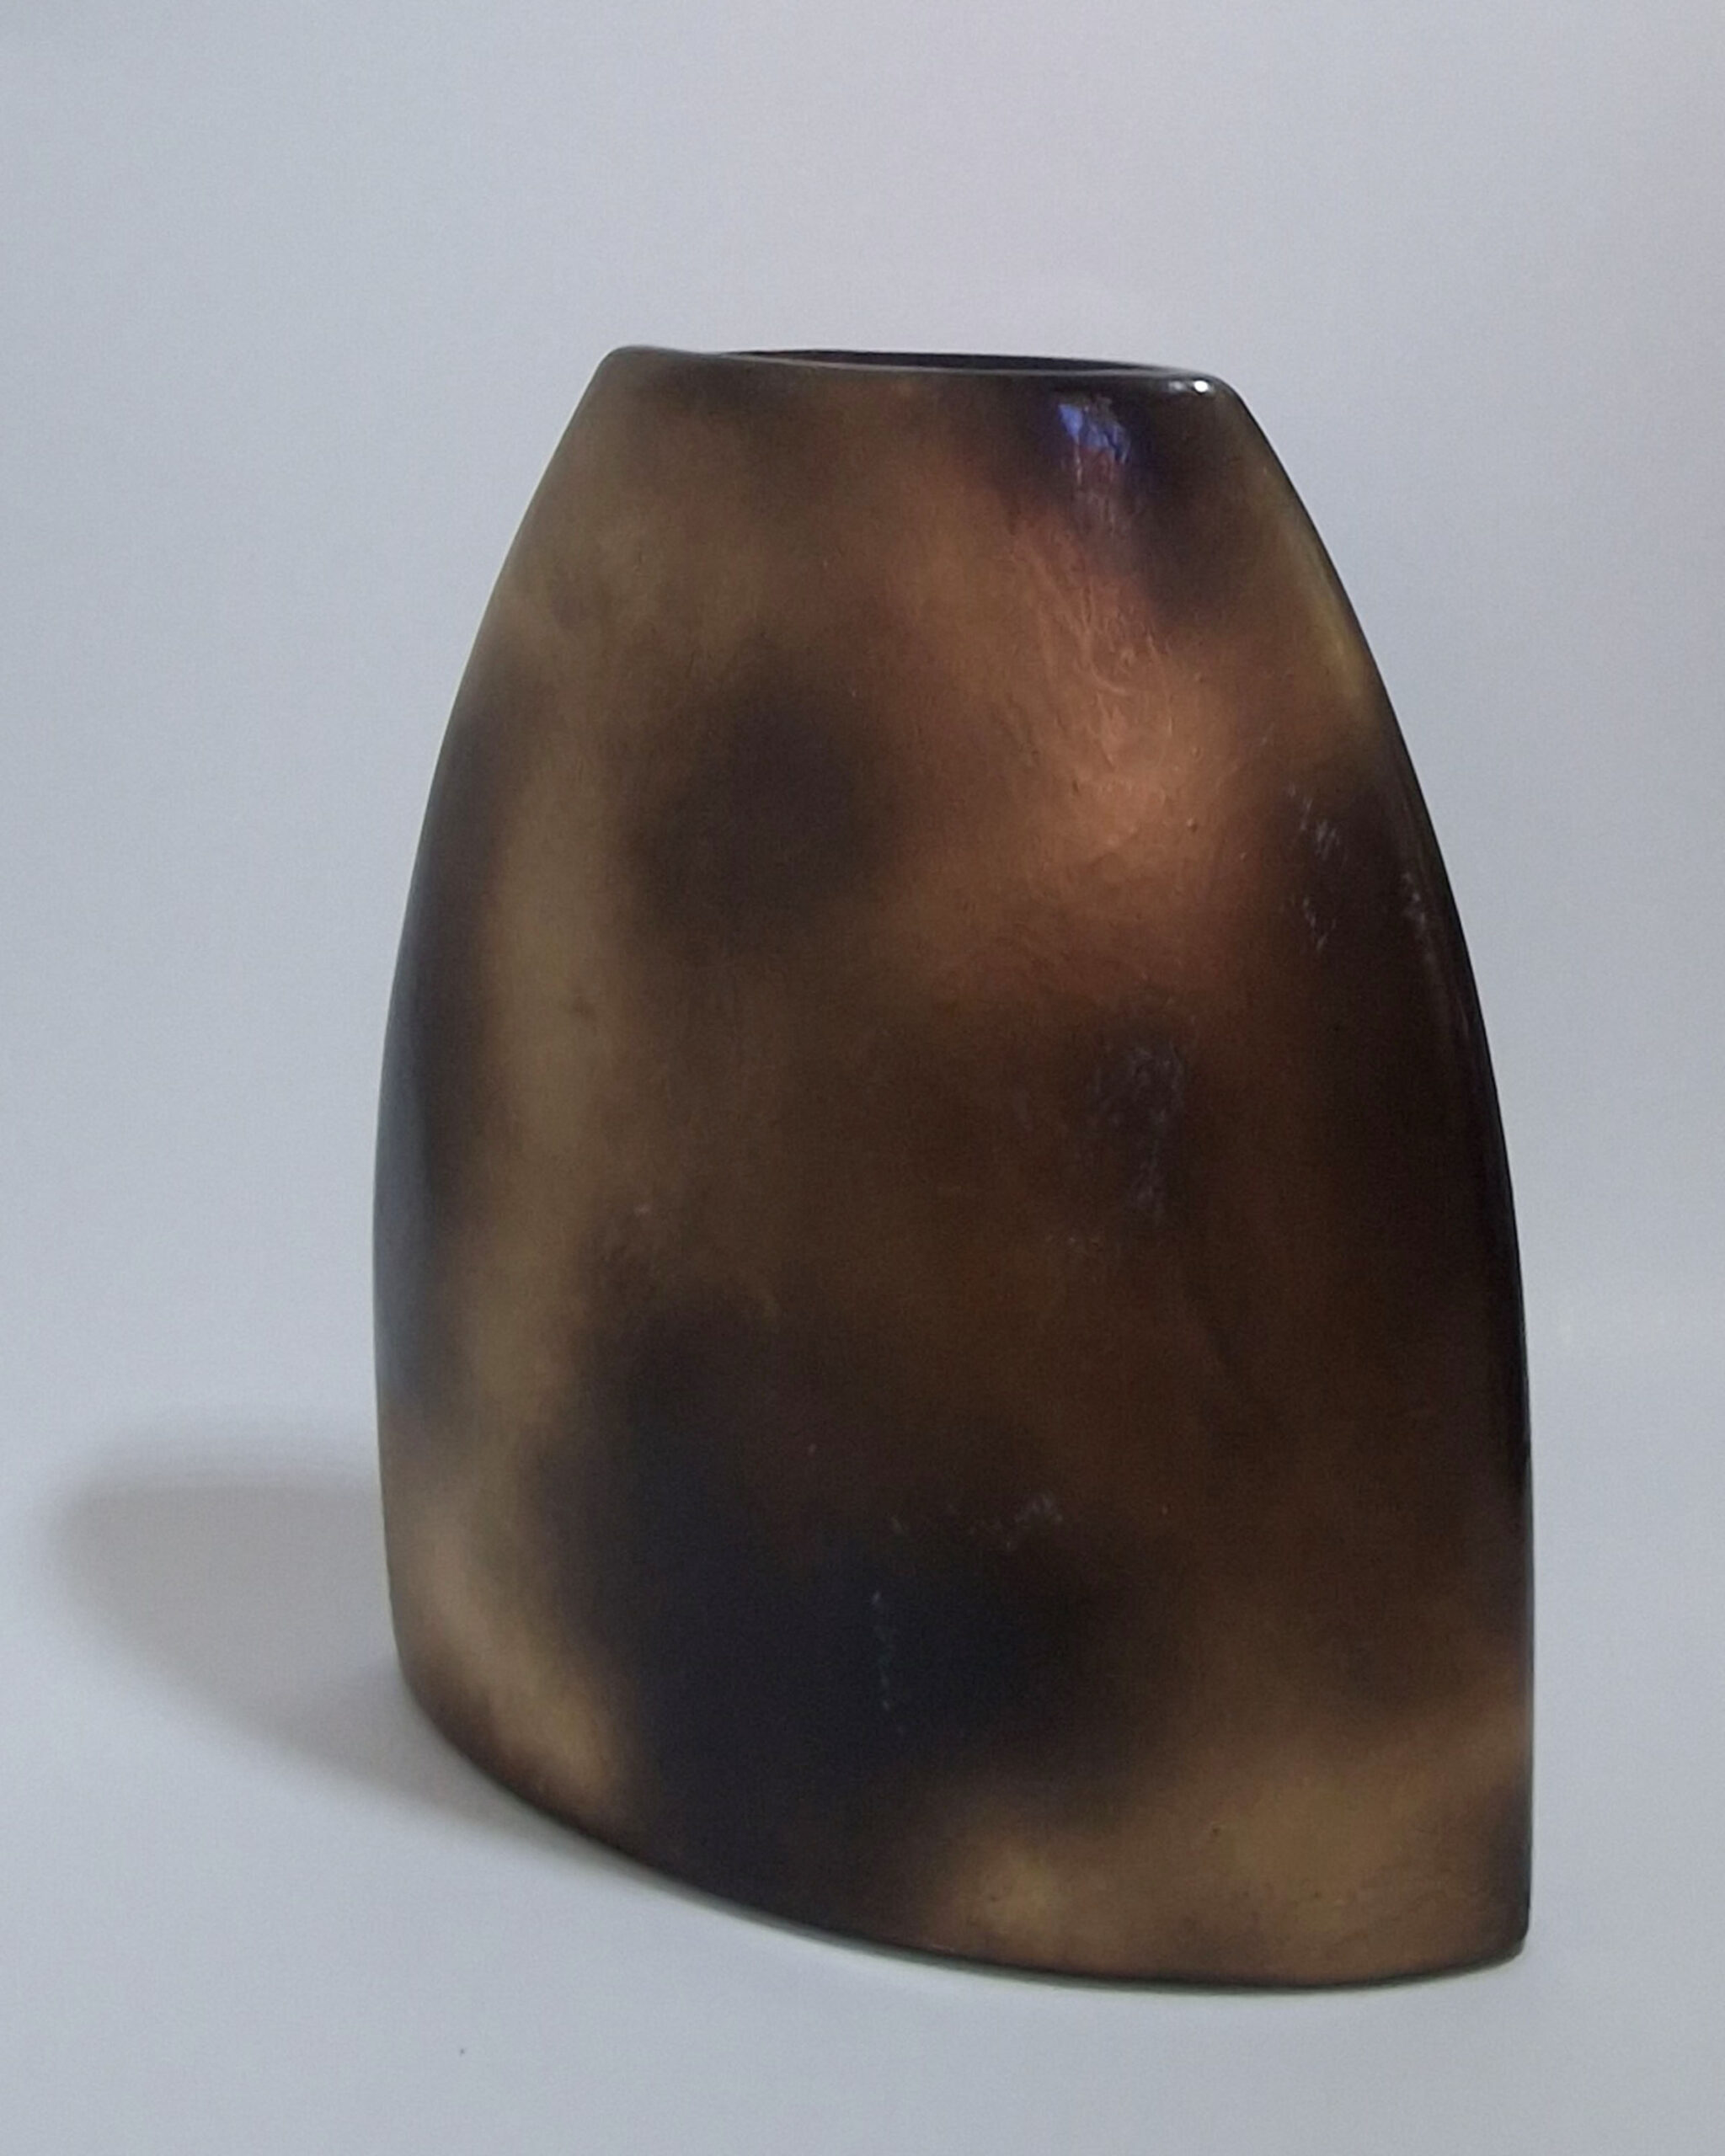 Μεταλλικό βάζο σε χρυσό χρώμα με μαύρες λεπτομέρειες